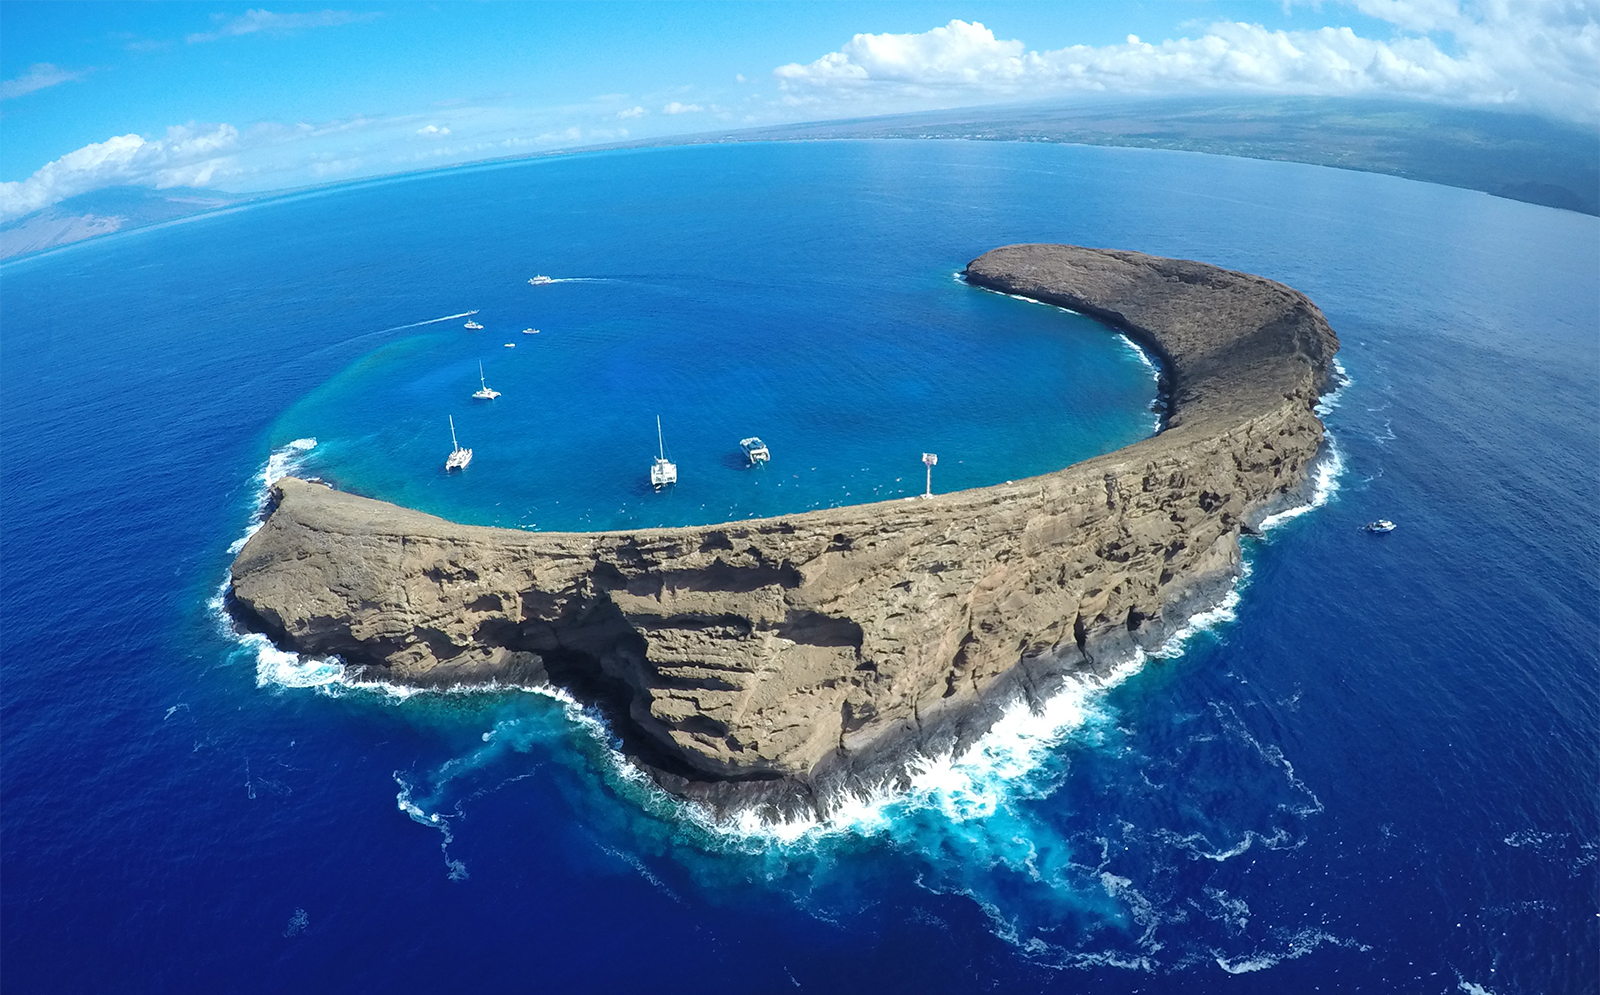  The island of Maui, USA